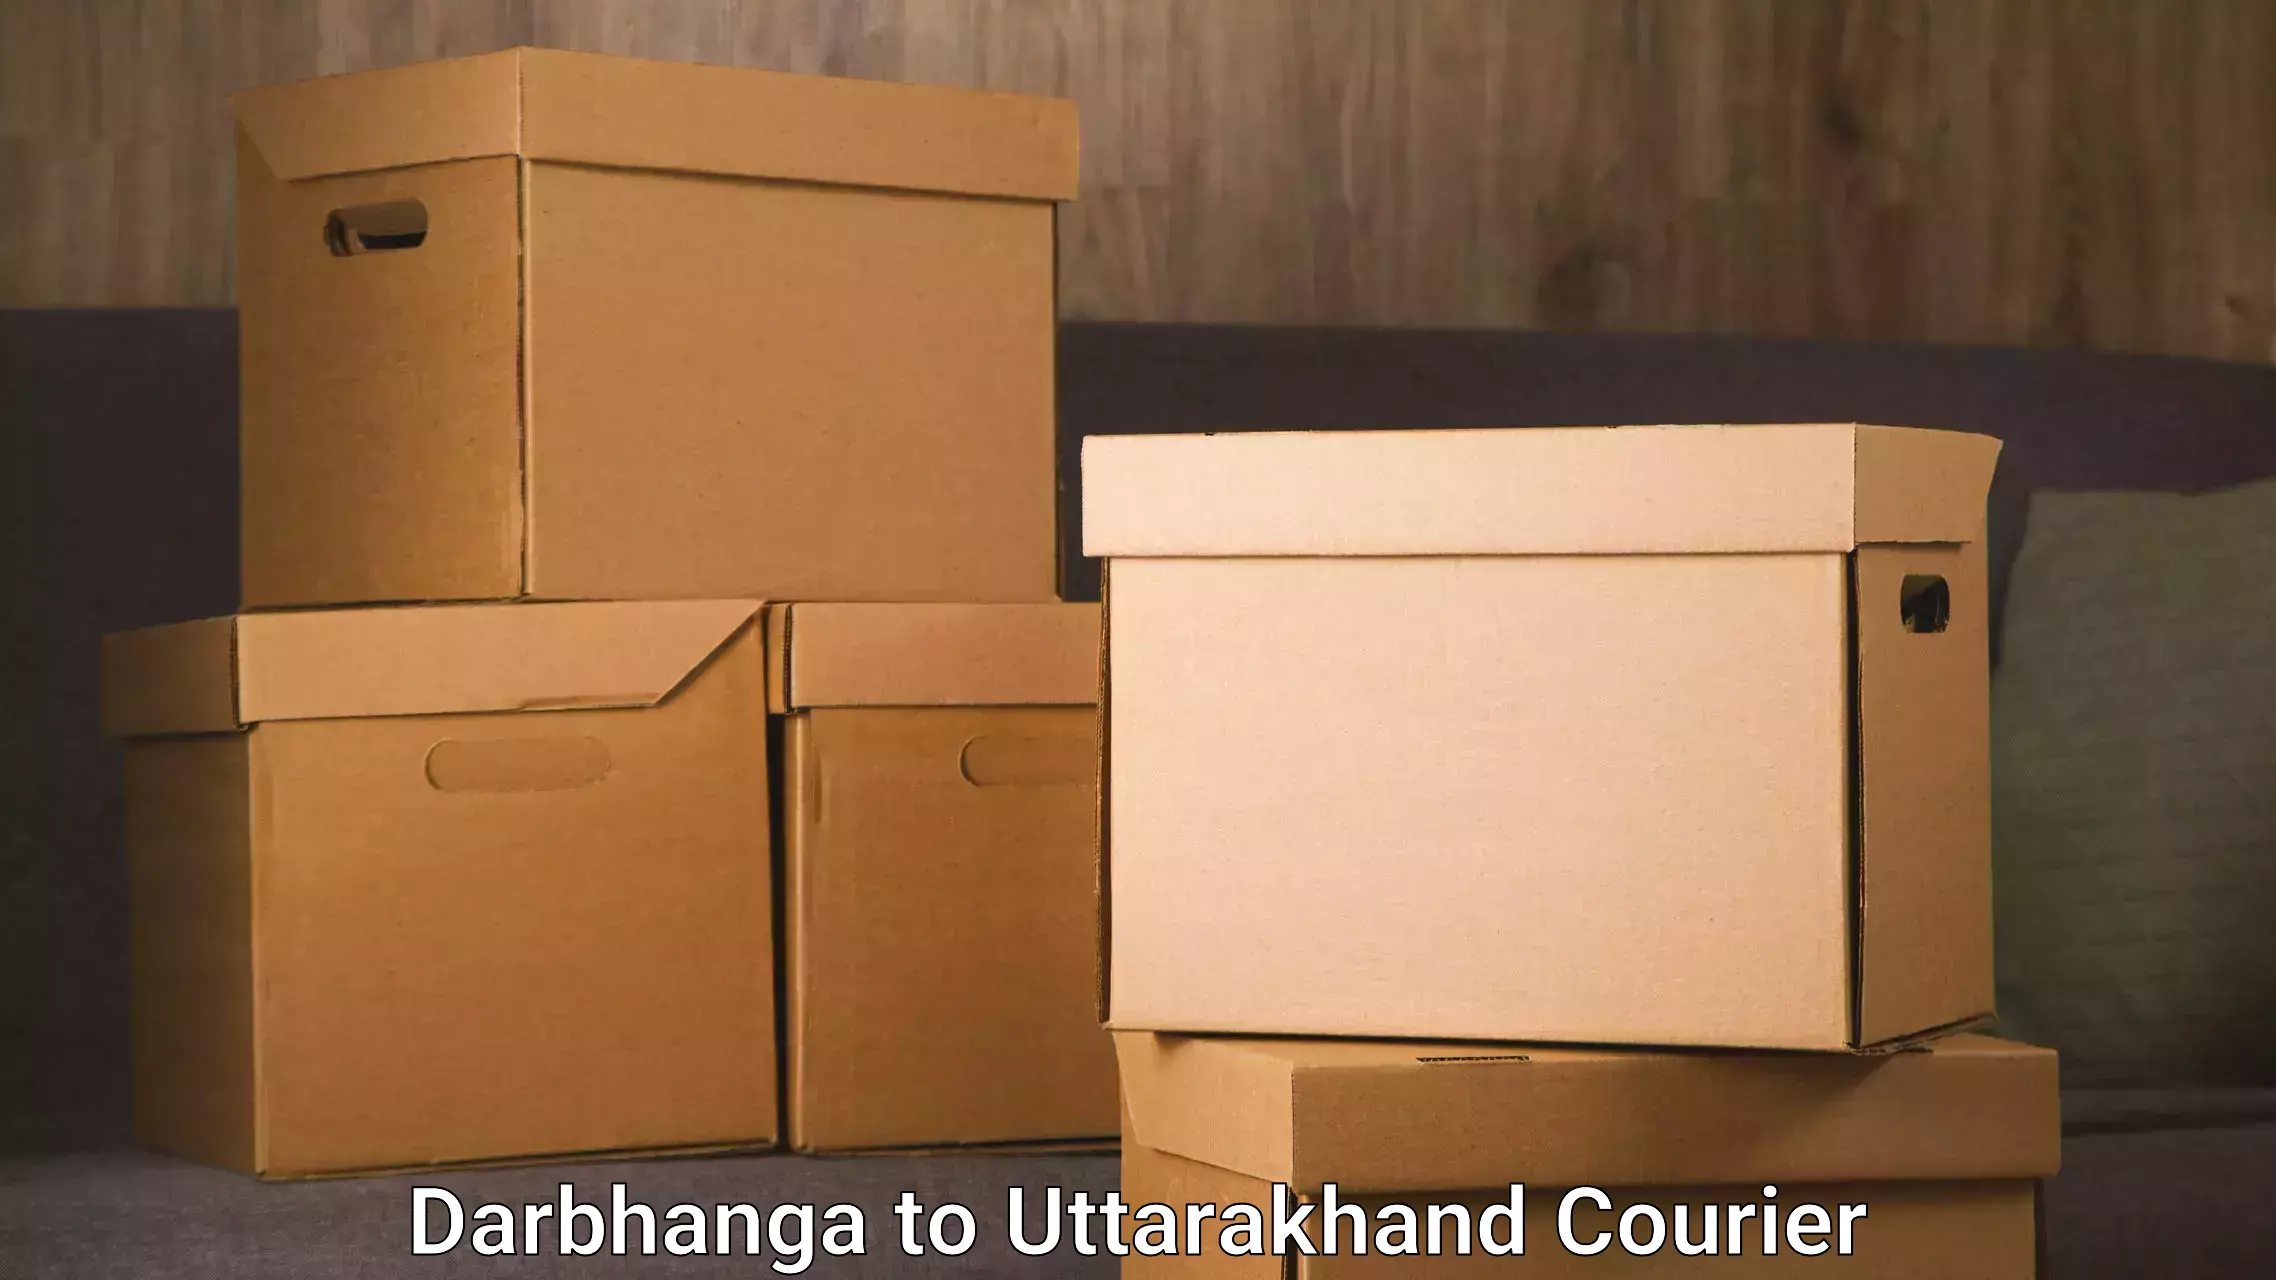 Furniture relocation experts Darbhanga to Uttarakhand